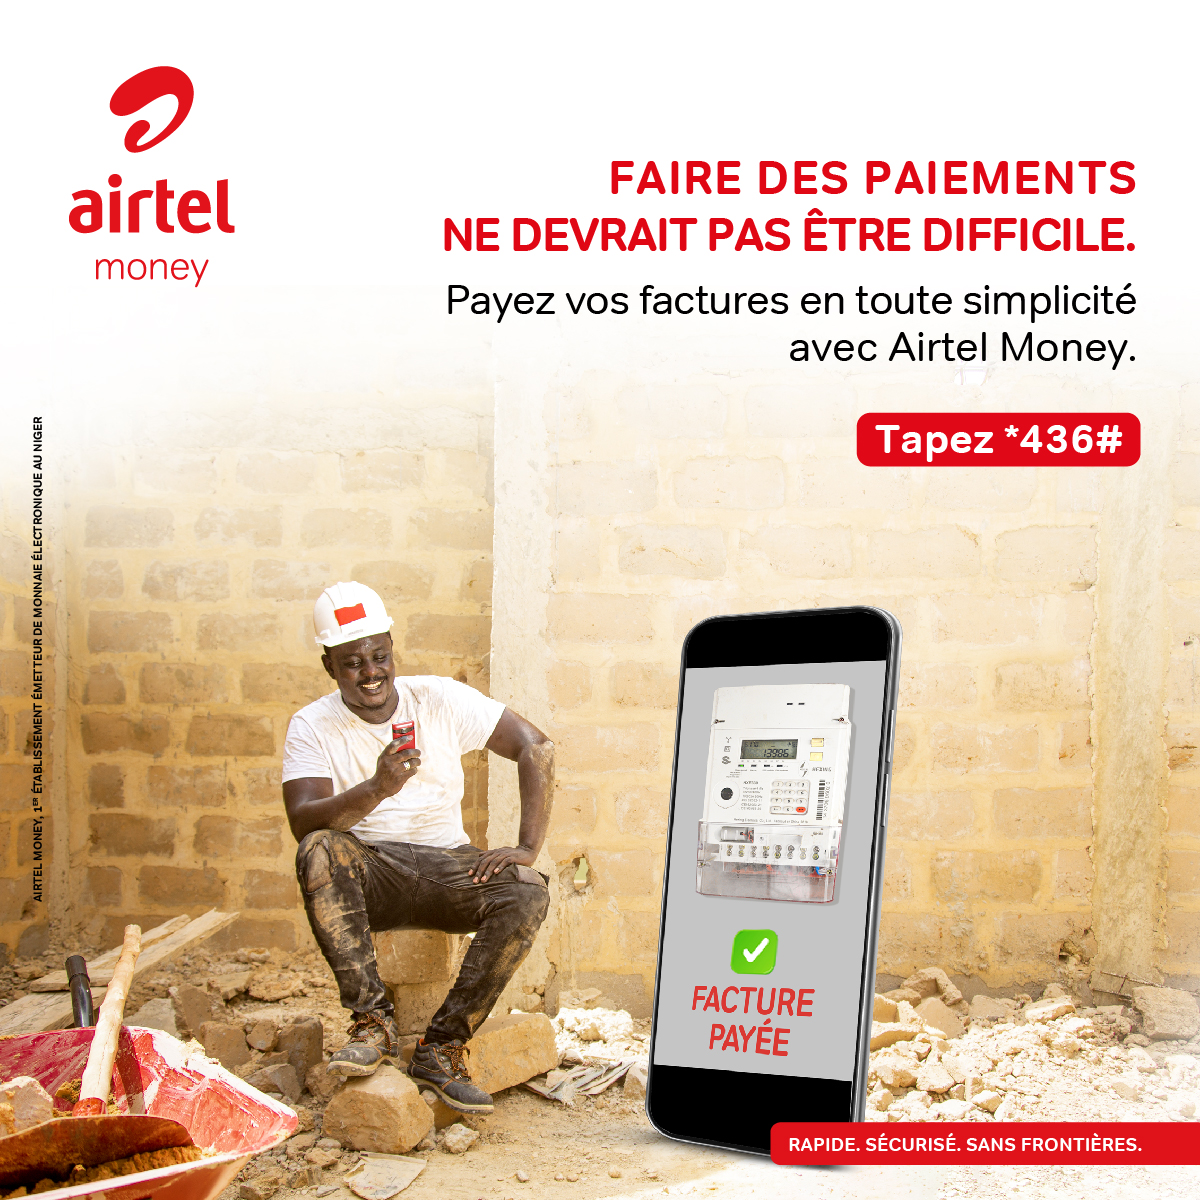 Paye tes factures Nigelec en toute simplicité avec Airtel Money !
Tape *436*4#.  

Airtel Money, 1er Établissement émetteur de monnaie électronique au Niger.
#AirtelMoneyNe #Nigelec